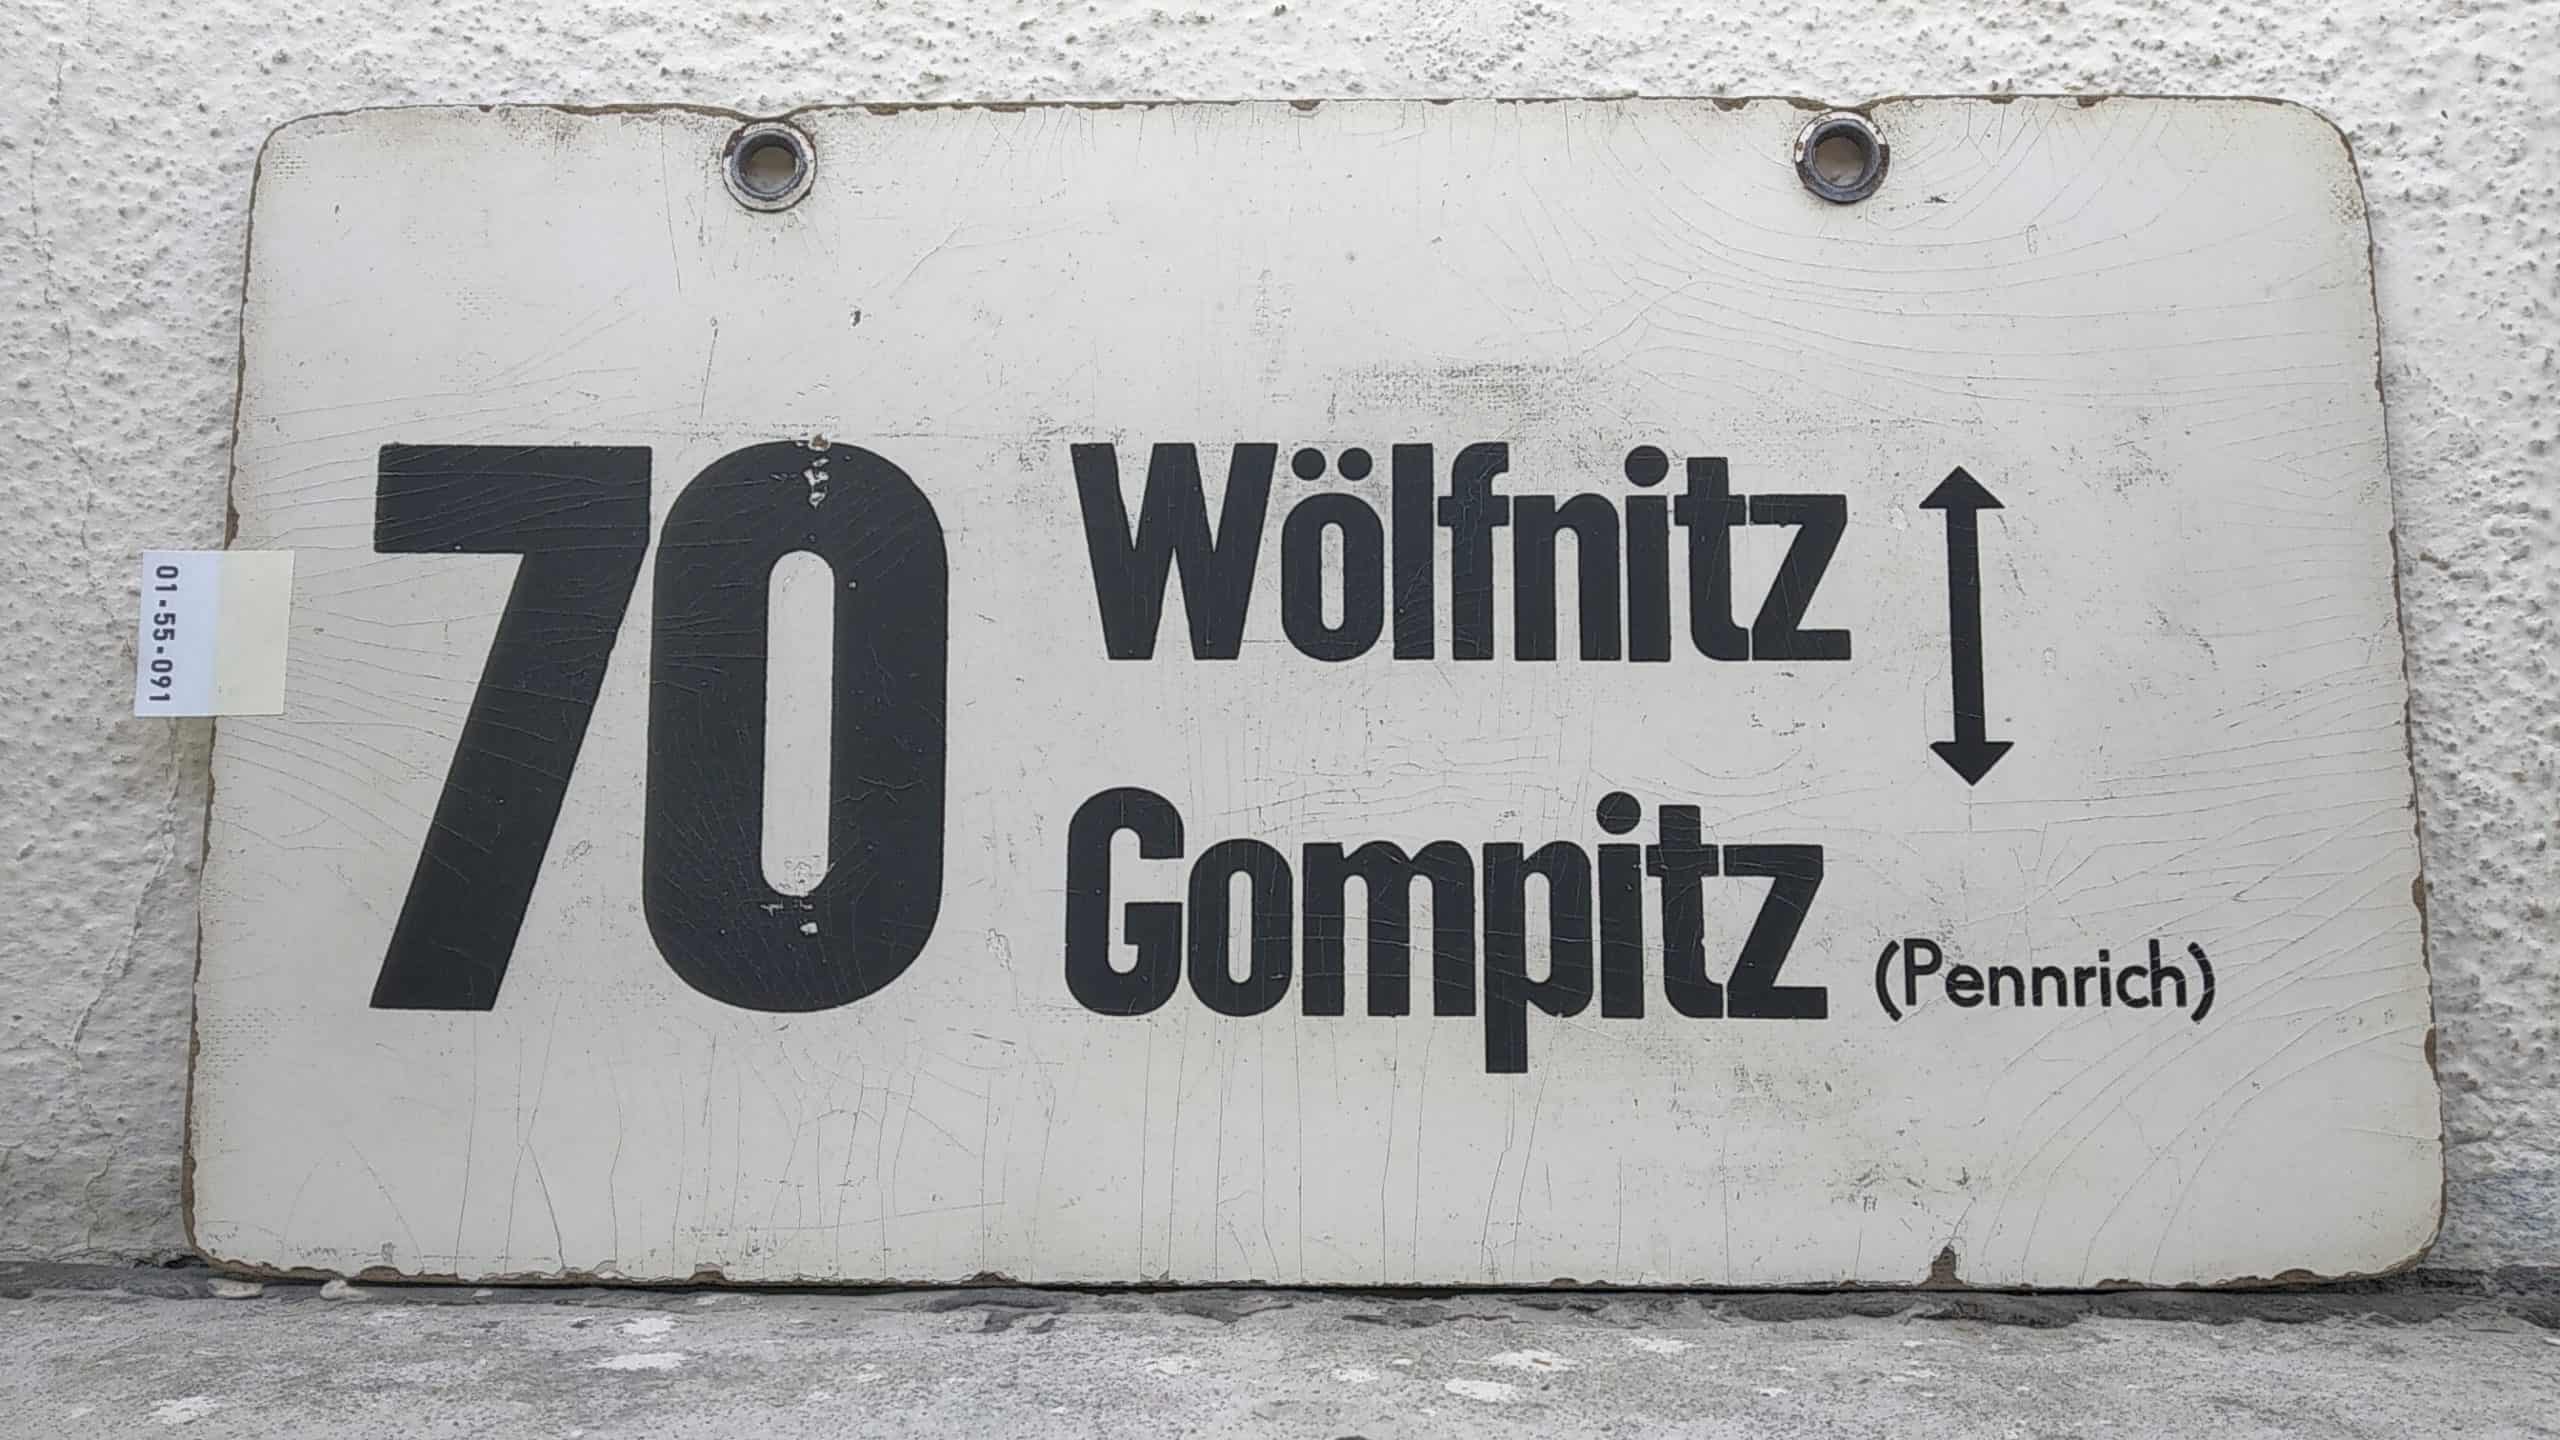 Ein seltenes Bus-Linienschild aus Dresden der Linie 70 von Wölfnitz nach Gompitz (Pennrich)